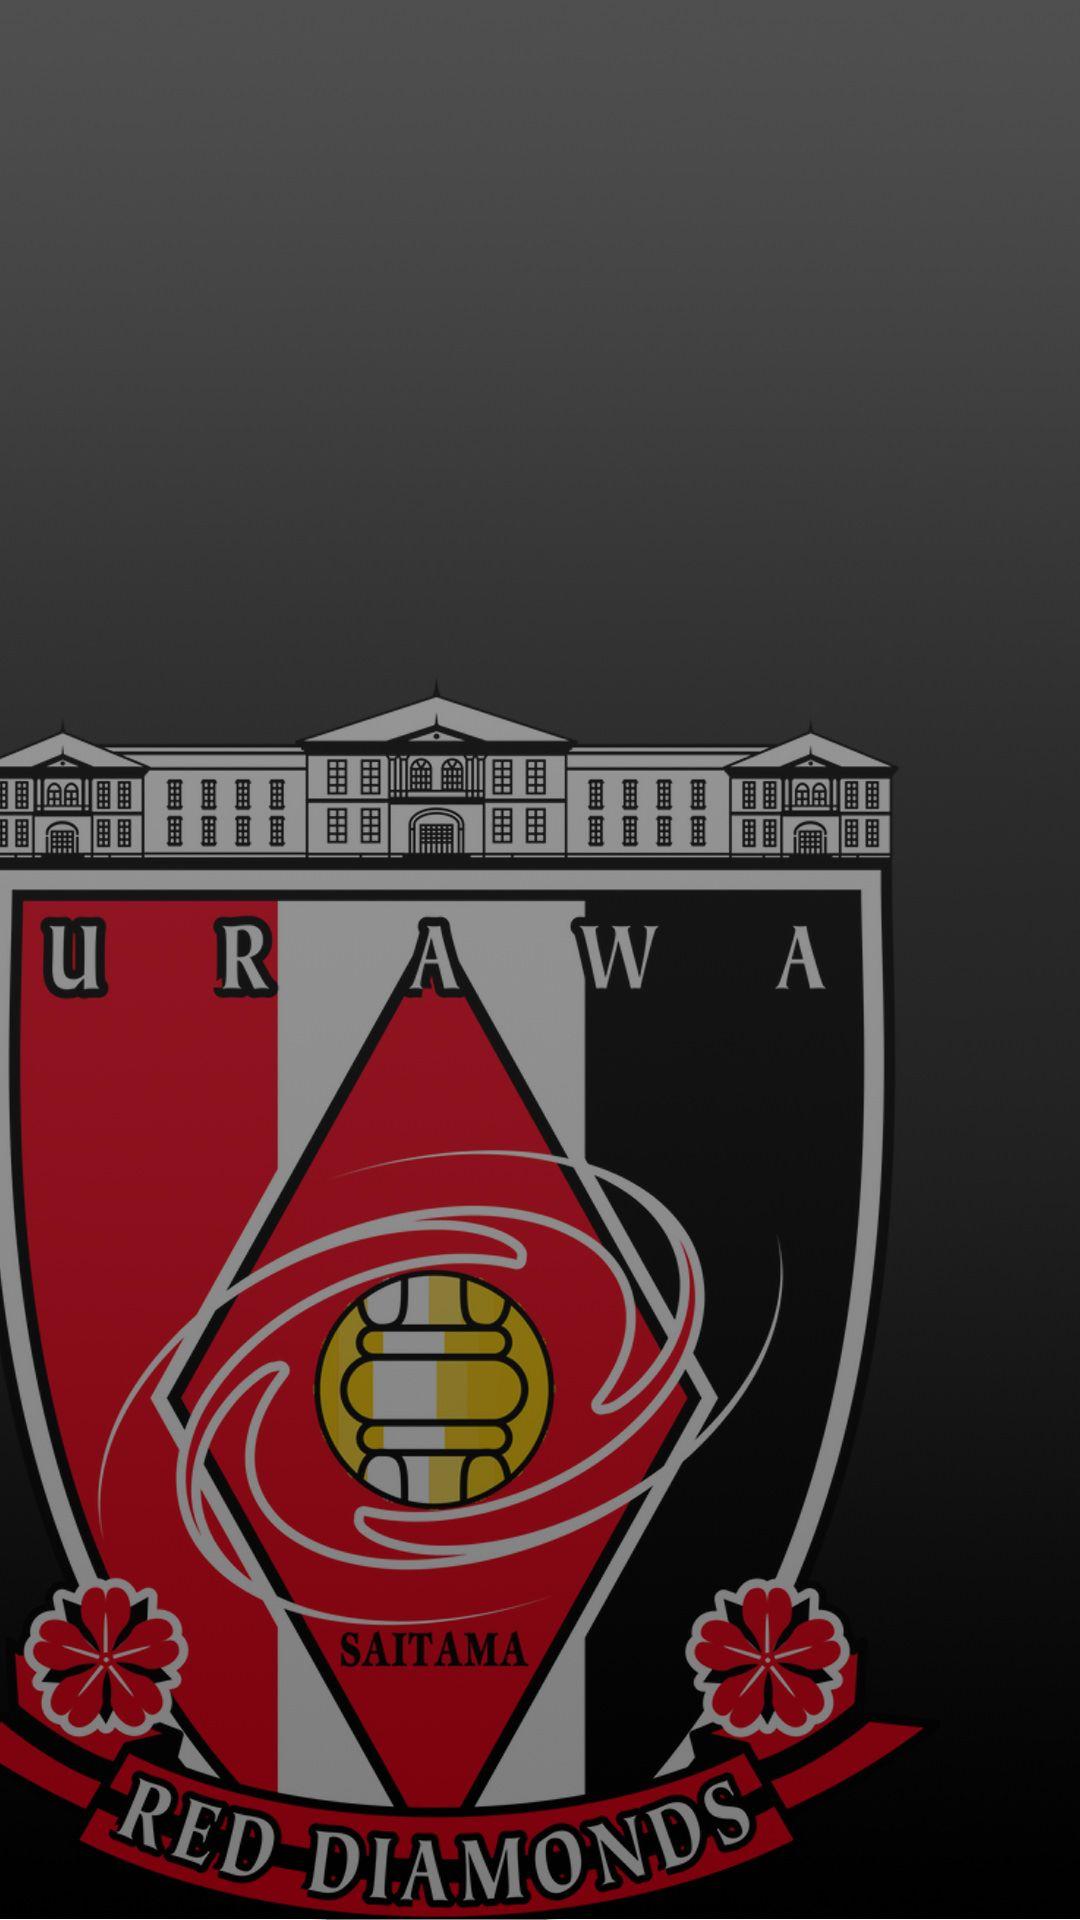 باشگاه فوتبال اوراوا رد دیاموندز (Urawa Red Diamonds)